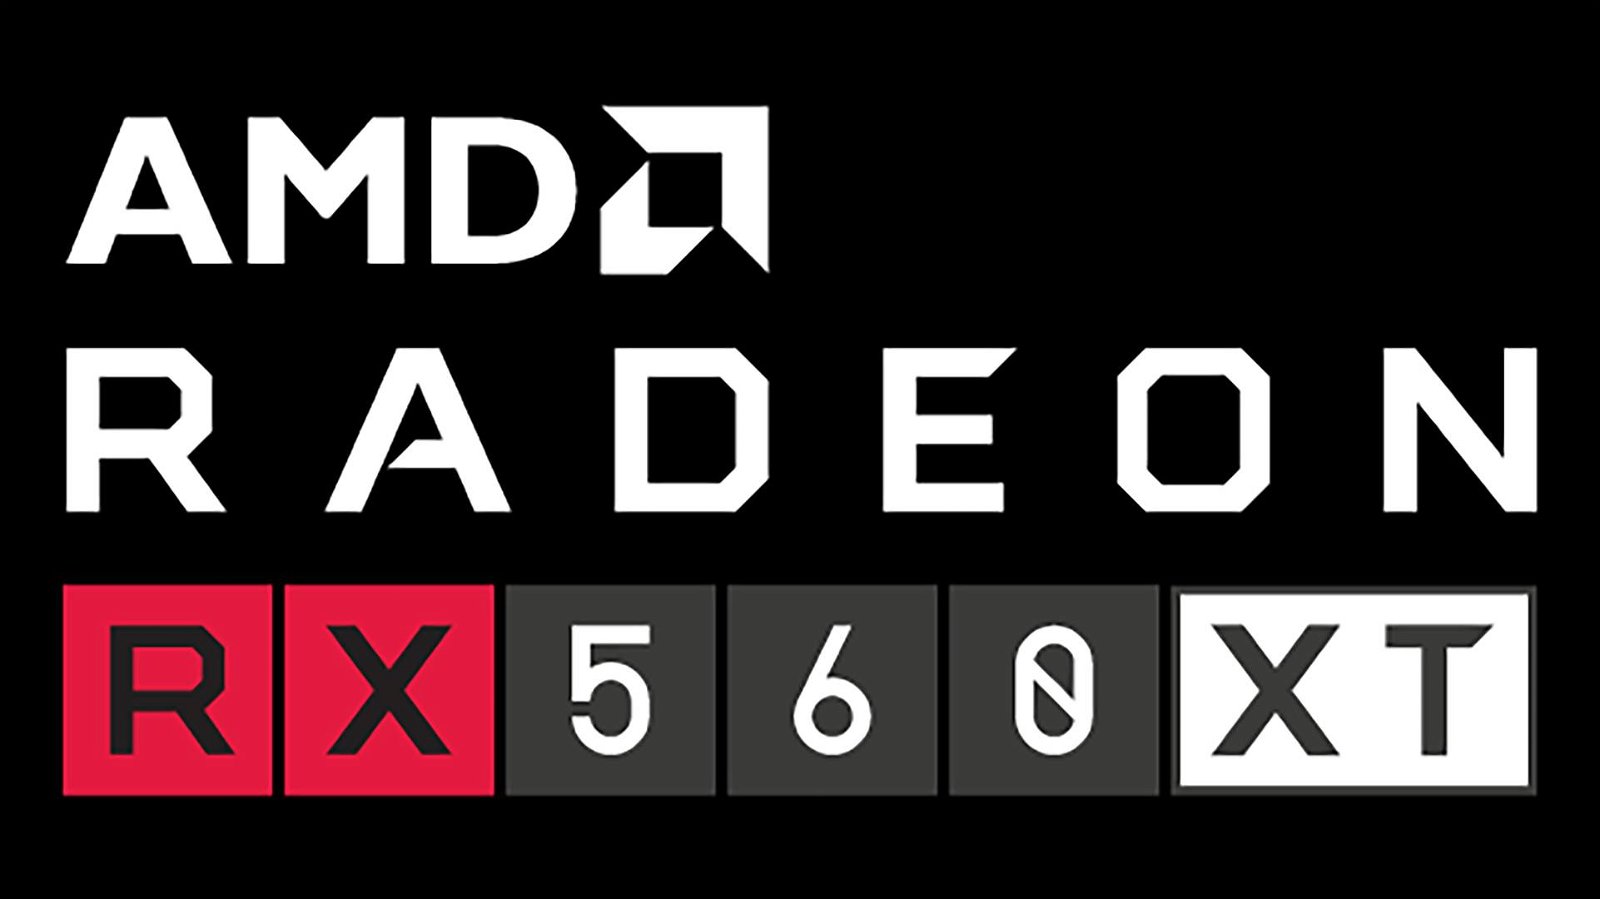 Immagine di RX 560 XT, la nuova entry level di AMD per la Cina